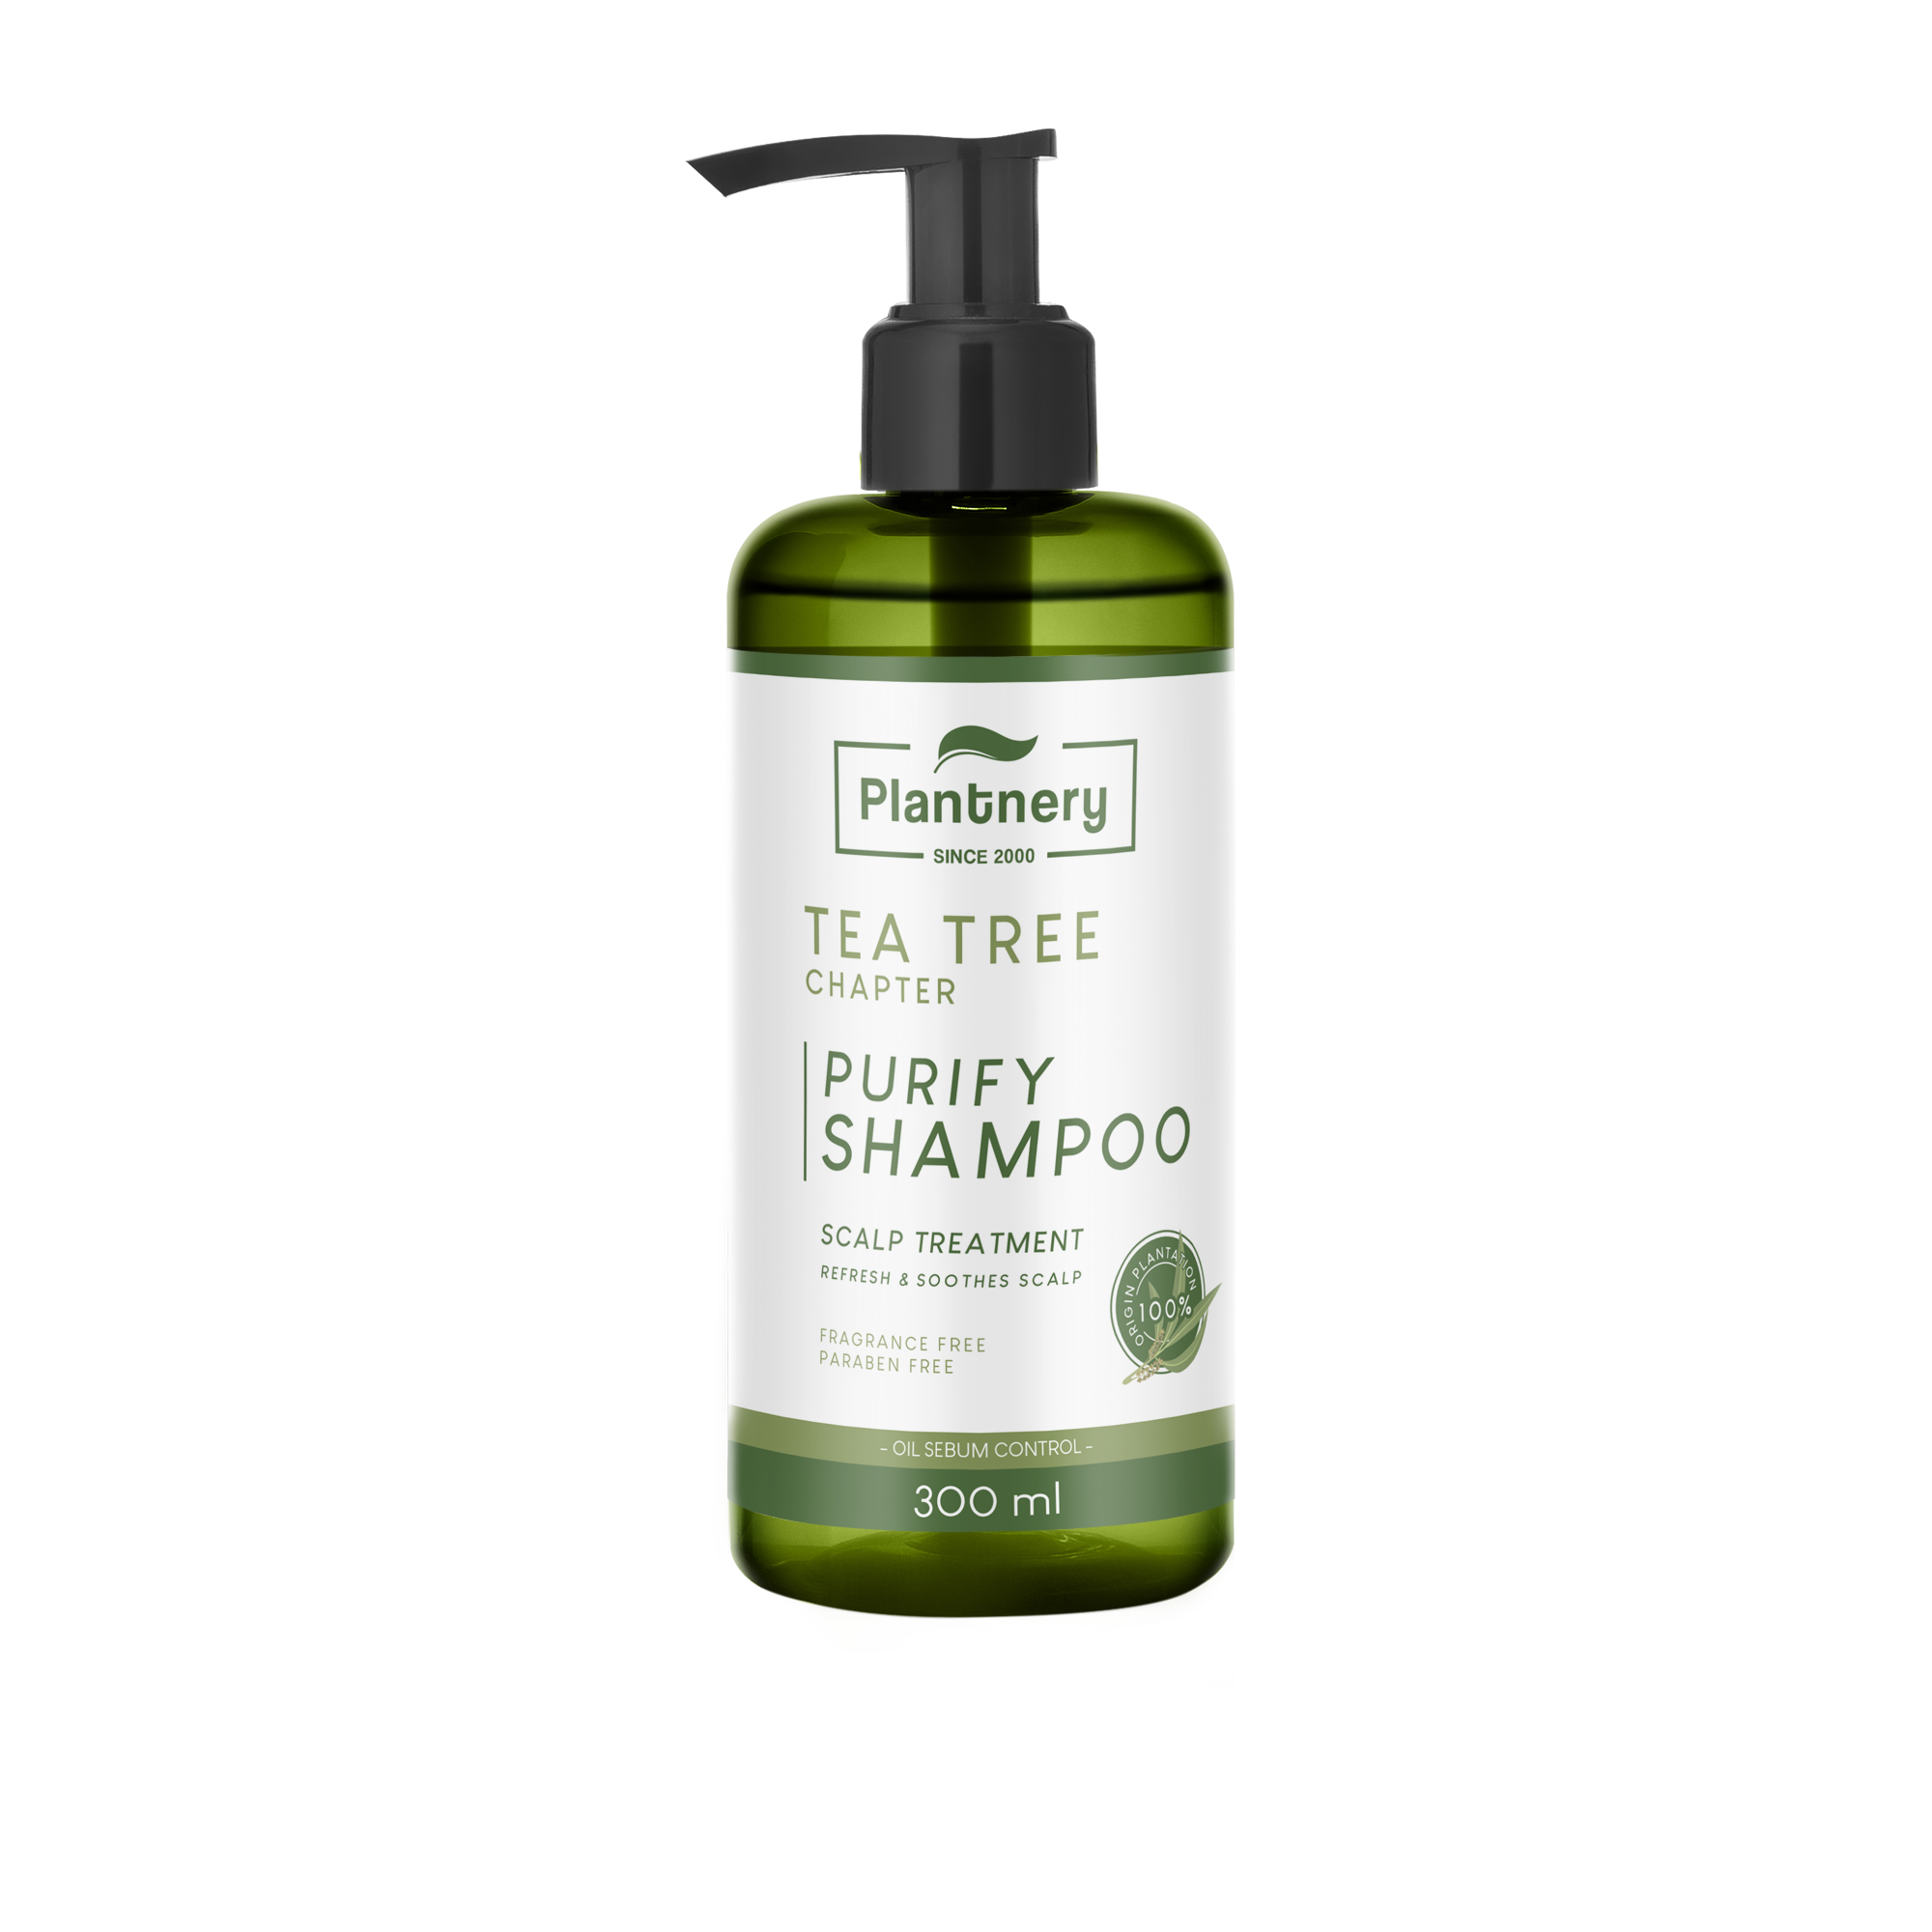 Plantnery Tea Tree Purify Shampoo 300 ml